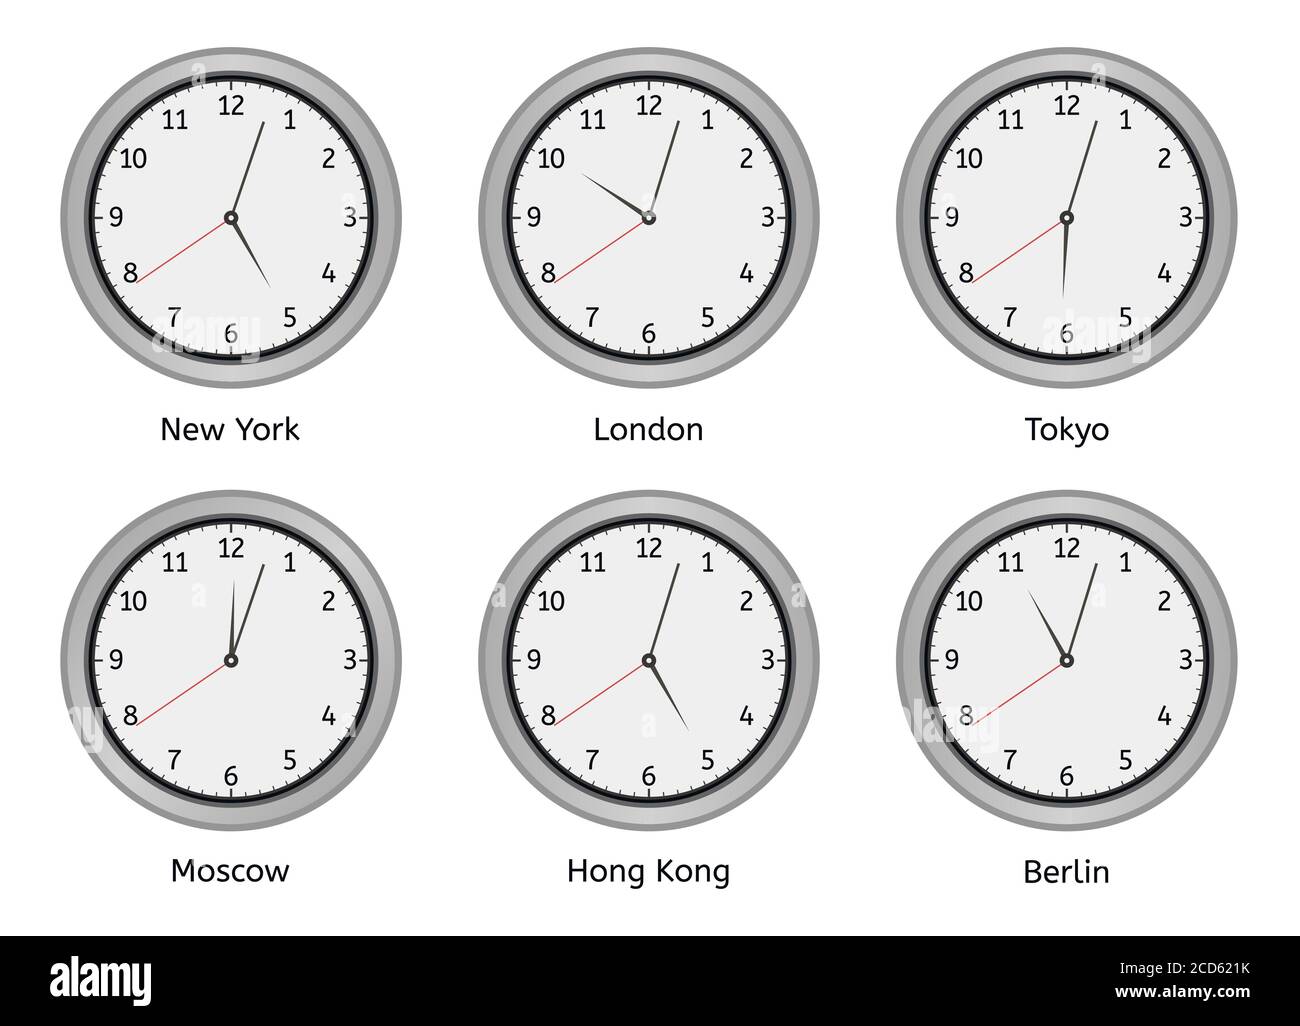 Zeitzonenuhren. Moderne Wand rund Uhr Gesicht, Zeitzonen Tag-und Nachtuhr,  Welt große Städte Zeitunterschied Vektor-Illustration gesetzt  Stock-Vektorgrafik - Alamy